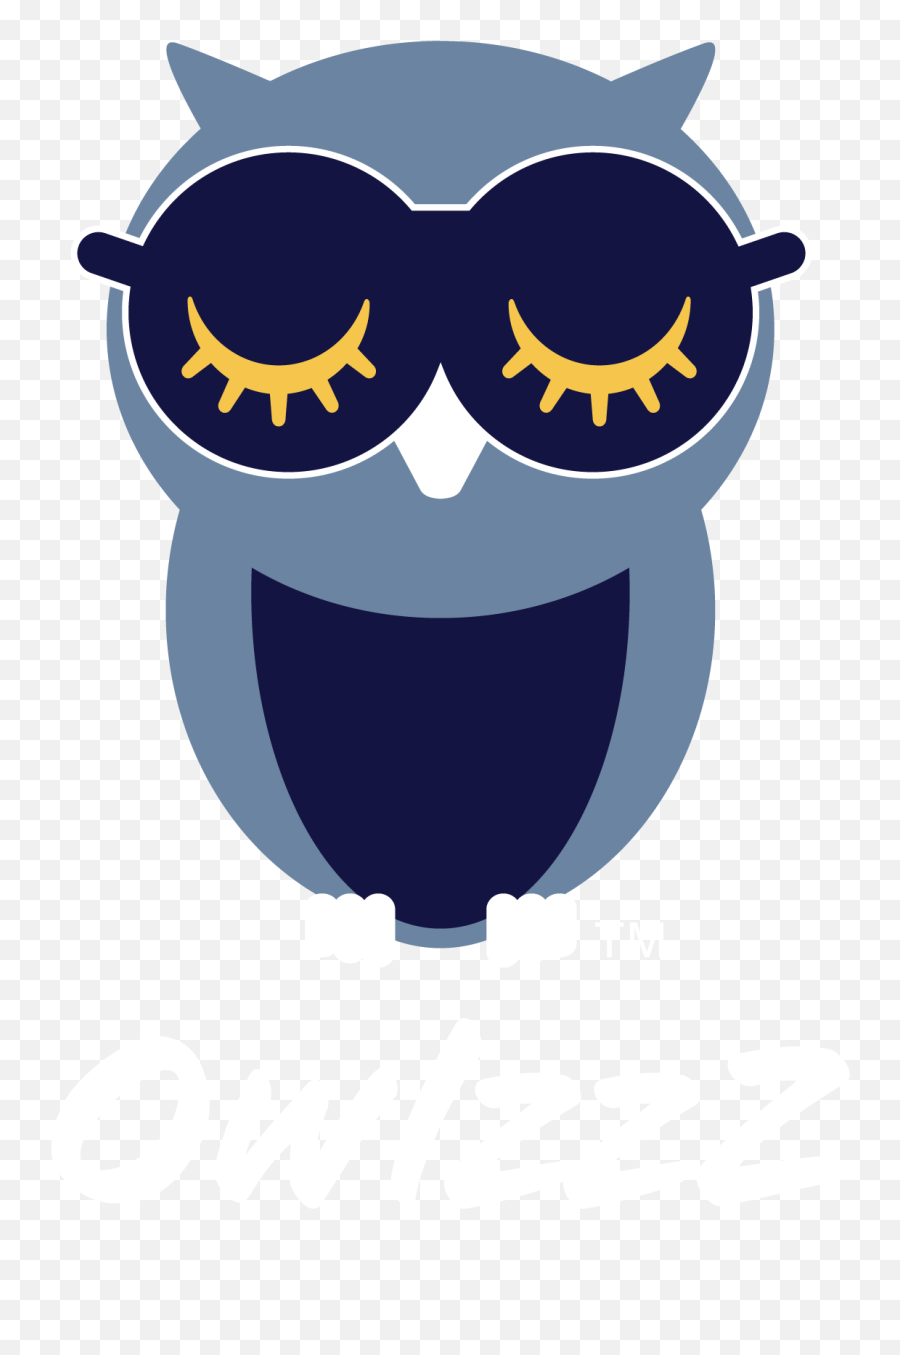 Owlzzz Sleep Masks Eye Covers Eye Shades Blindfolds Emoji,Emoticon Eye Shades To Sleep